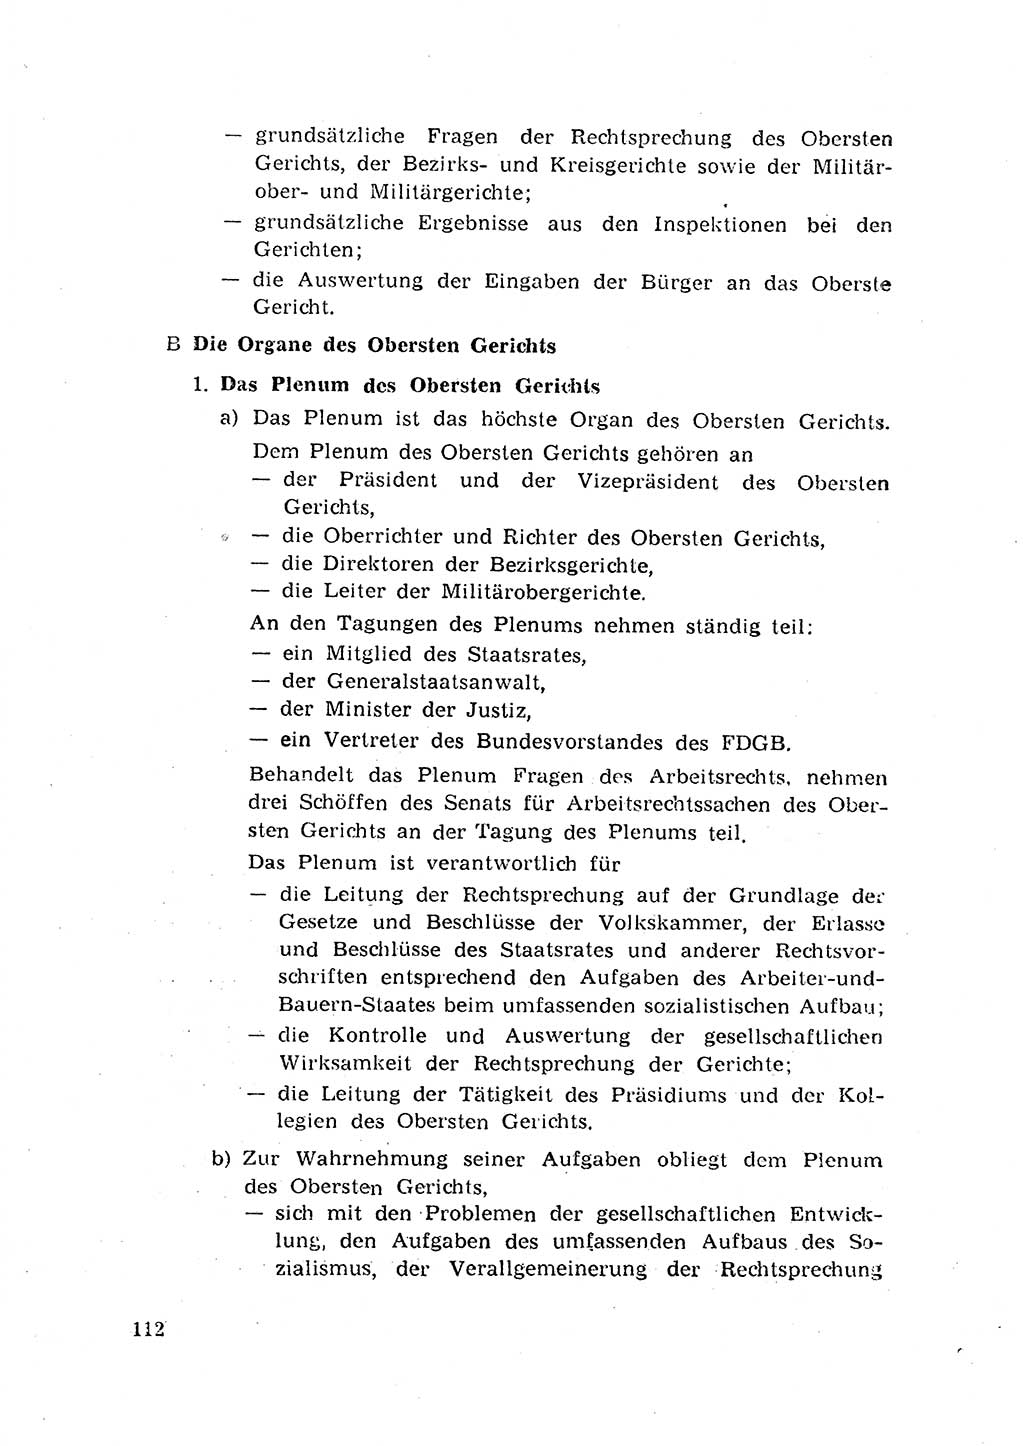 Rechtspflegeerlaß [Deutsche Demokratische Republik (DDR)] 1963, Seite 112 (R.-Pfl.-Erl. DDR 1963, S. 112)